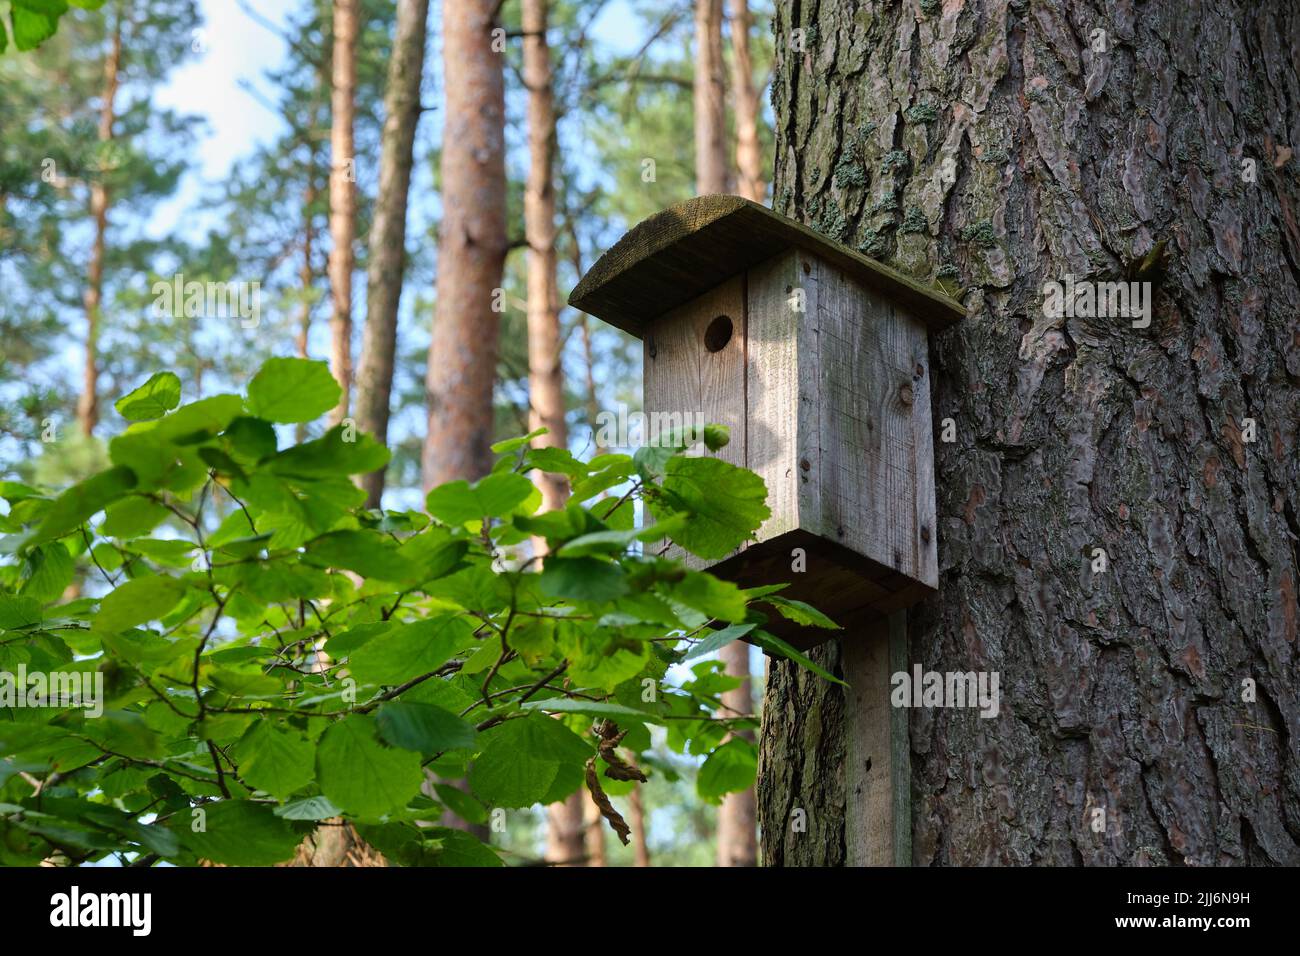 Vogelhaus auf einem alten Baum. Vogelhaus aus Holz, Nistkasten für Singvögel im Park oder Wald. Stockfoto